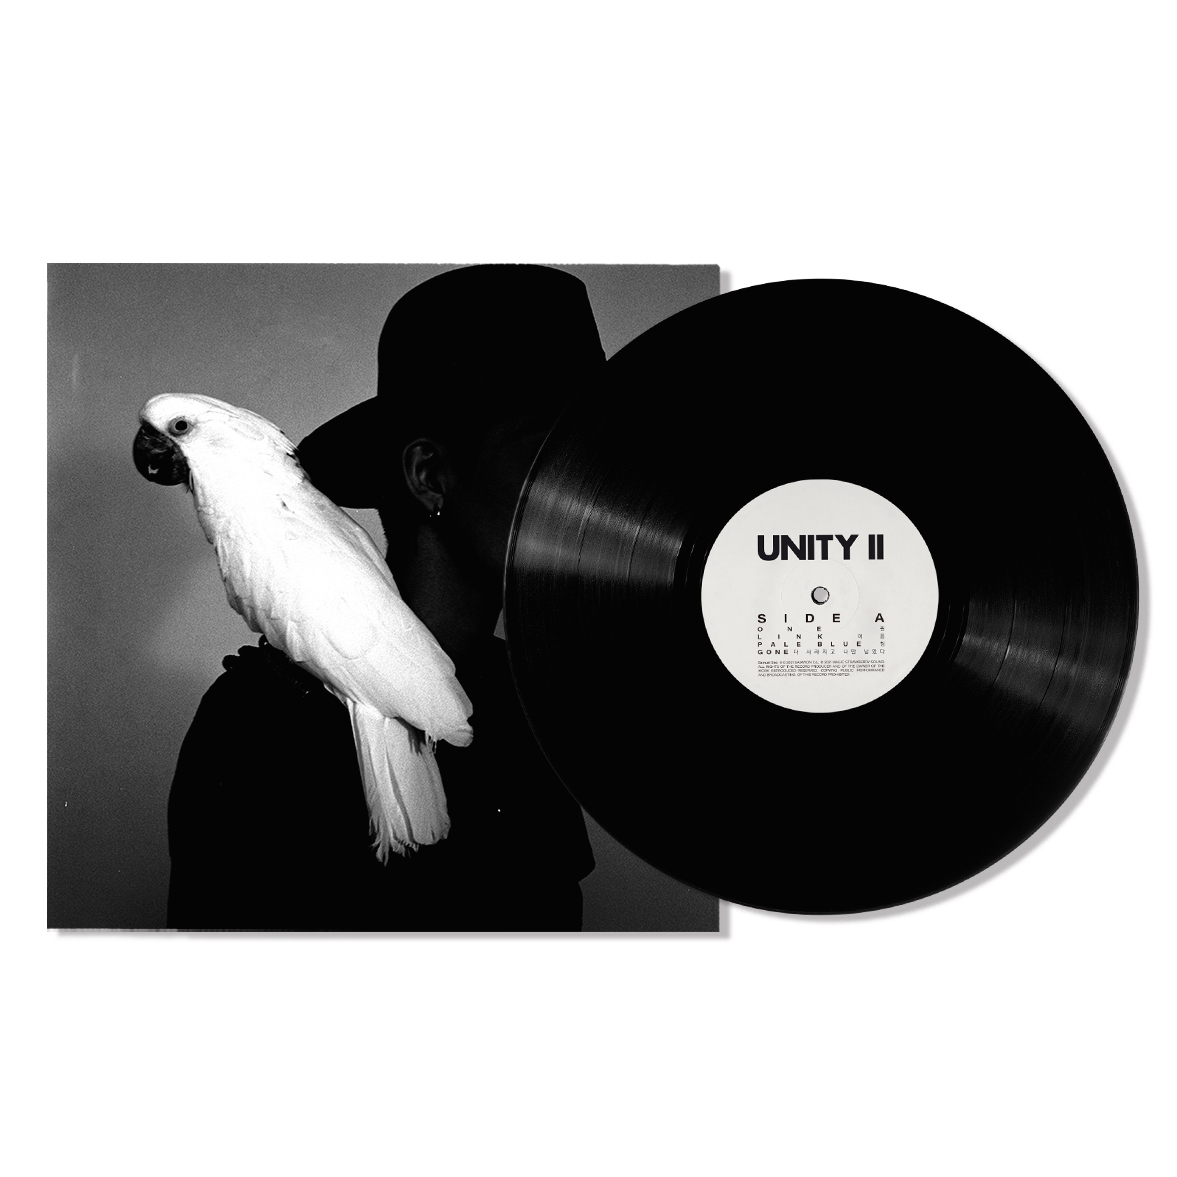 서사무엘 (Samuel Seo) - UNITY II [LP] 